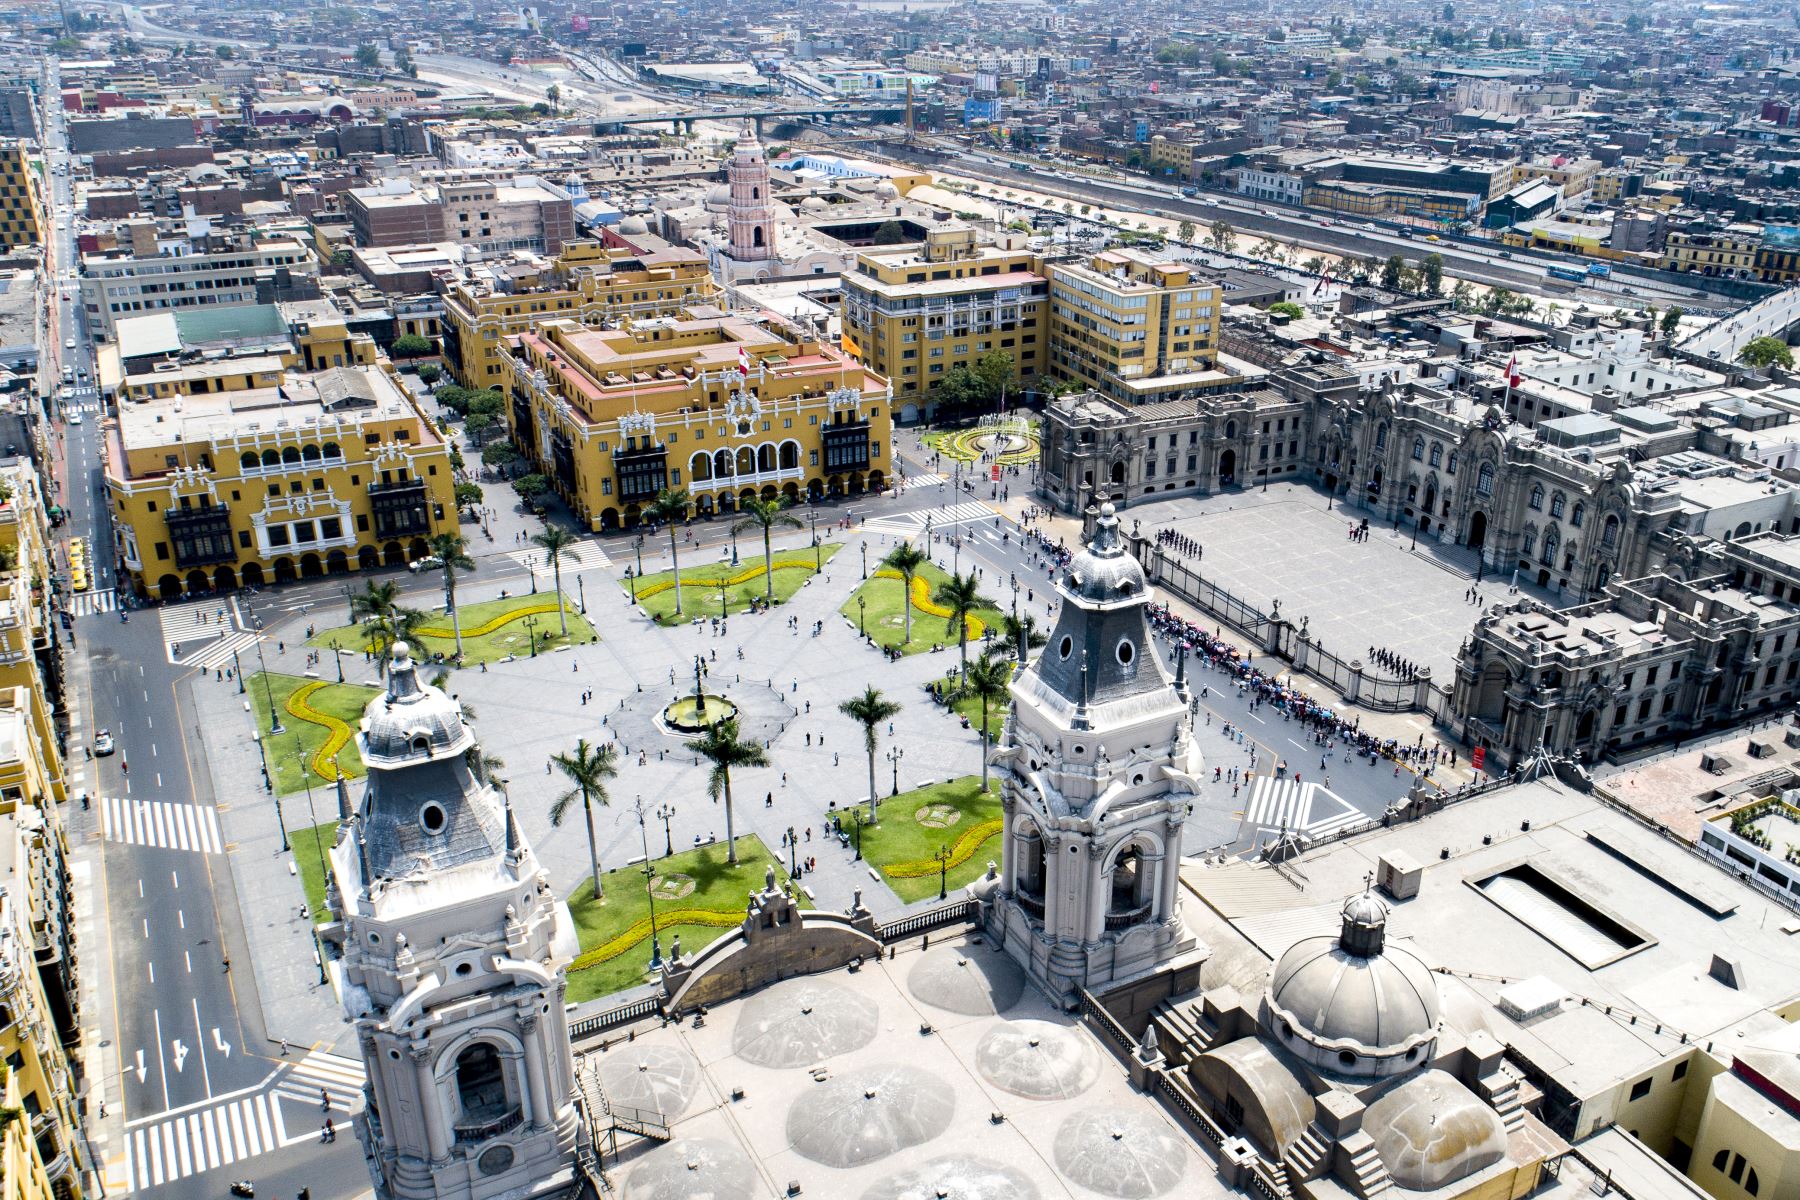 Plazas, documentos y monumentos de Lima Metropolitana se muestran en el marco de las celebraciones por el Bicentenario de la independencia. En la imagen, plaza mayor, plaza de armas de lima. Foto: Municipalidad de Lima